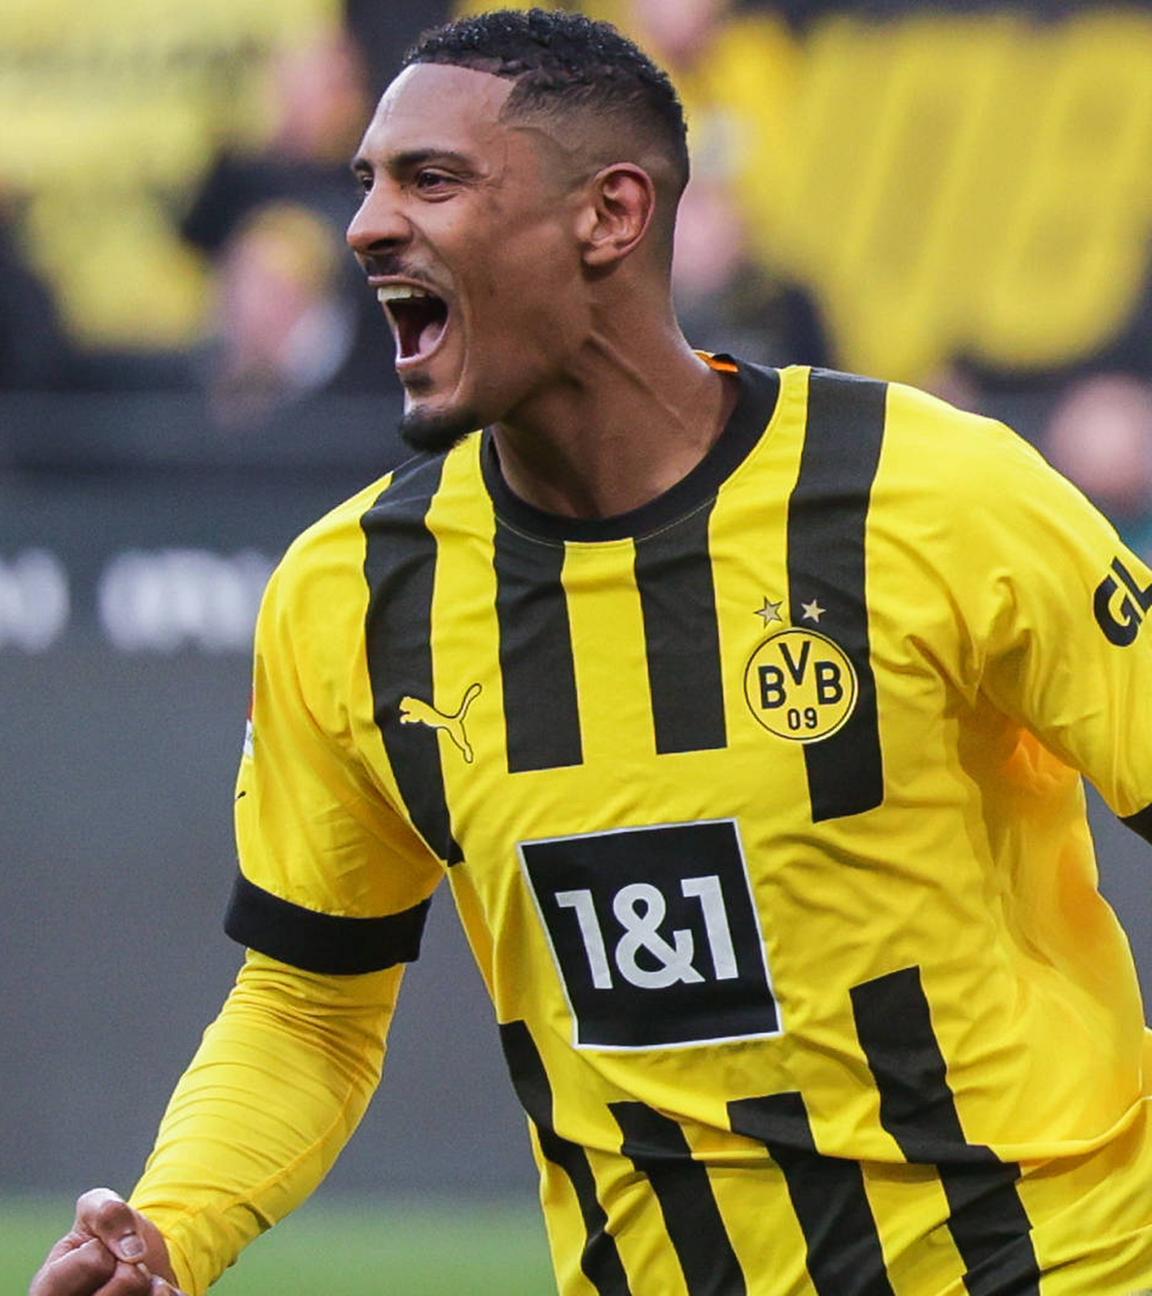 04.02.2023, Dortmund: Sebastien Haller (Borussia Dortmund) jubelt im Spiel gegen den SC Freiburg